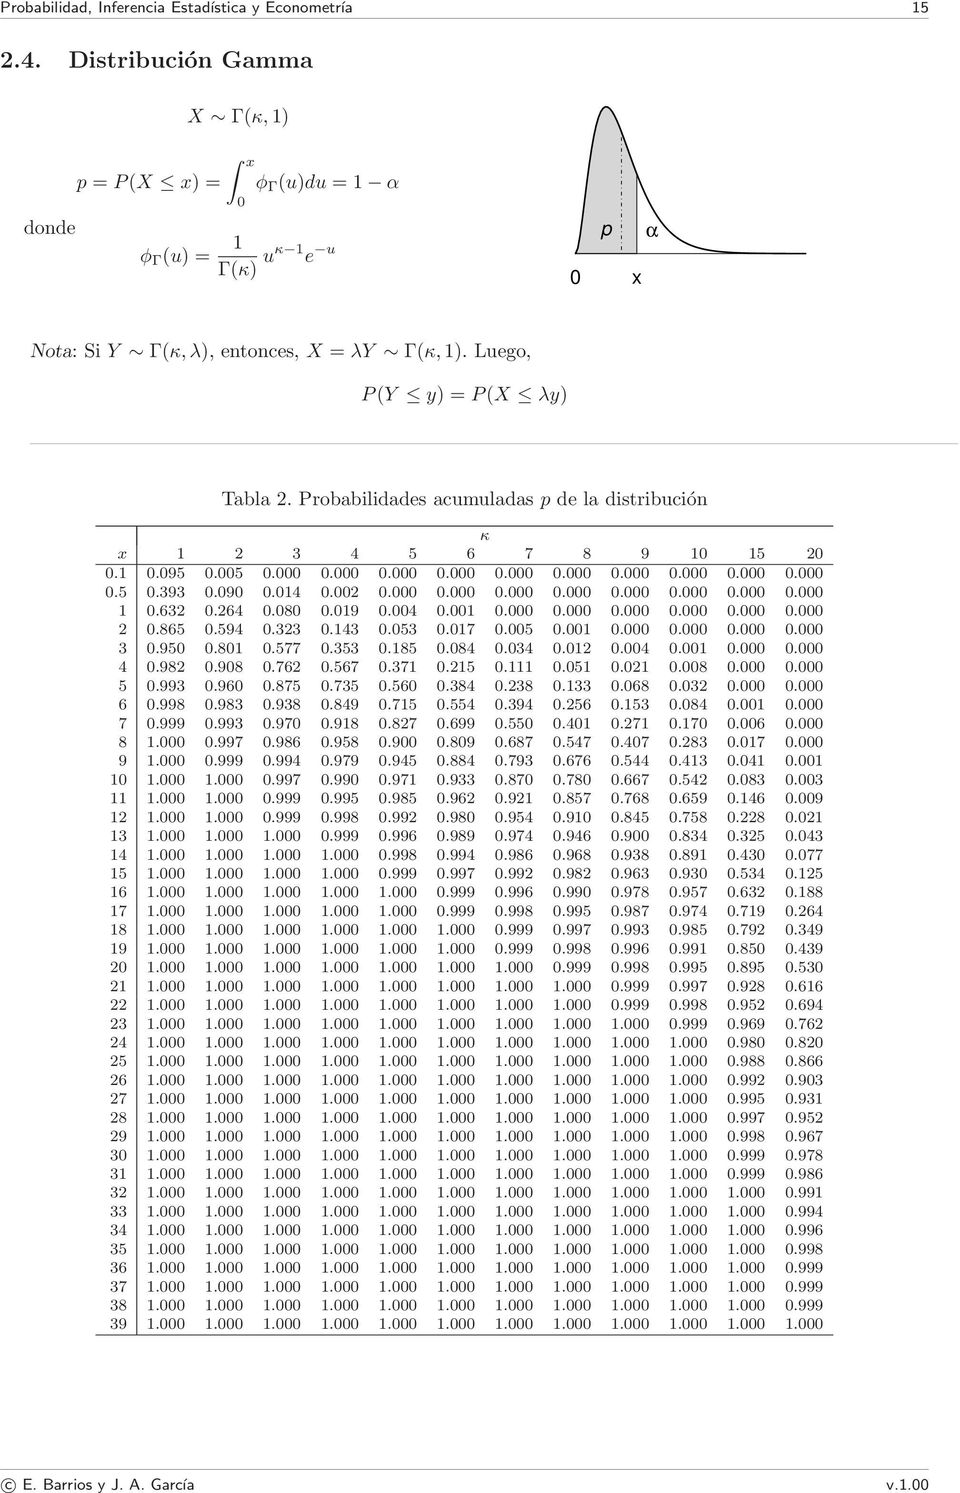 Probabilidades acumuladas p de la distribución κ x 1 2 3 4 5 6 7 8 9 10 15 20 0.1 0.095 0.005 0.000 0.000 0.000 0.000 0.000 0.000 0.000 0.000 0.000 0.000 0.5 0.393 0.090 0.014 0.002 0.000 0.000 0.000 0.000 0.000 0.000 0.000 0.000 1 0.